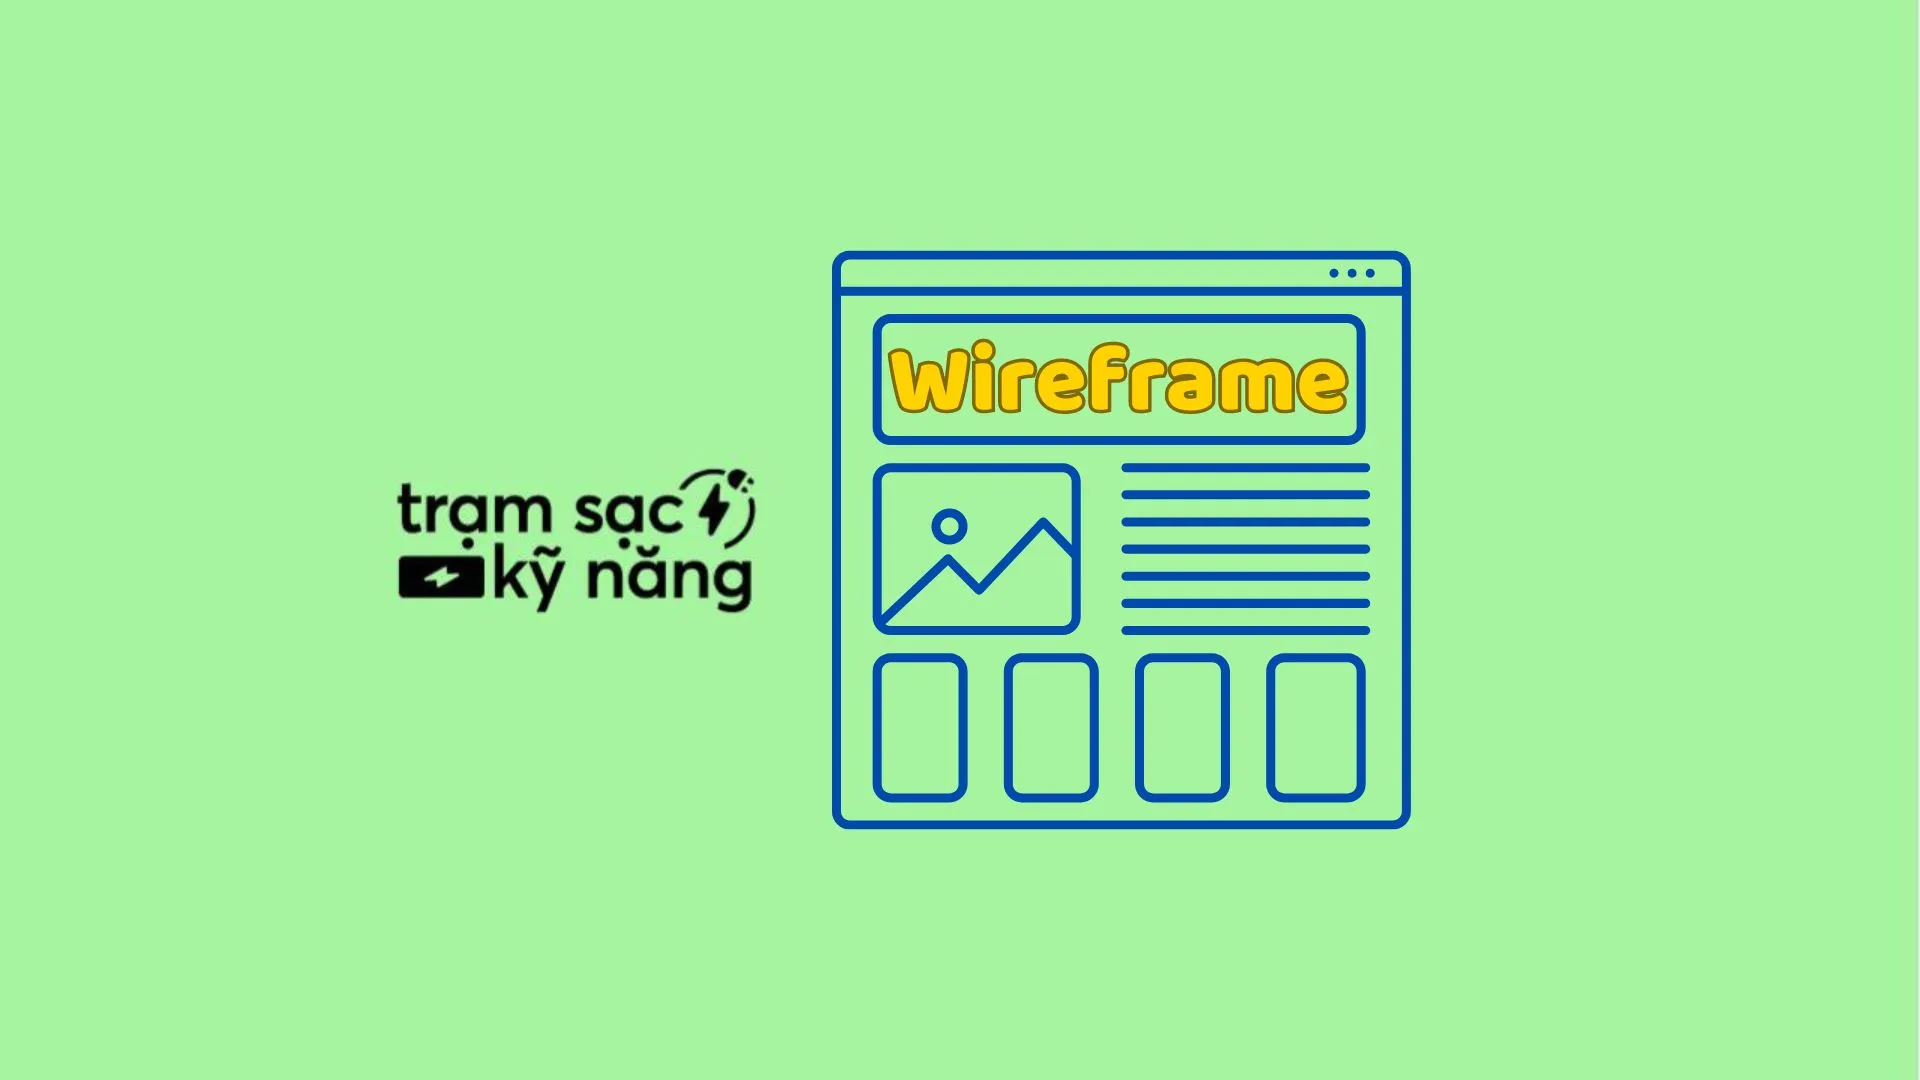 Wireframe là gì